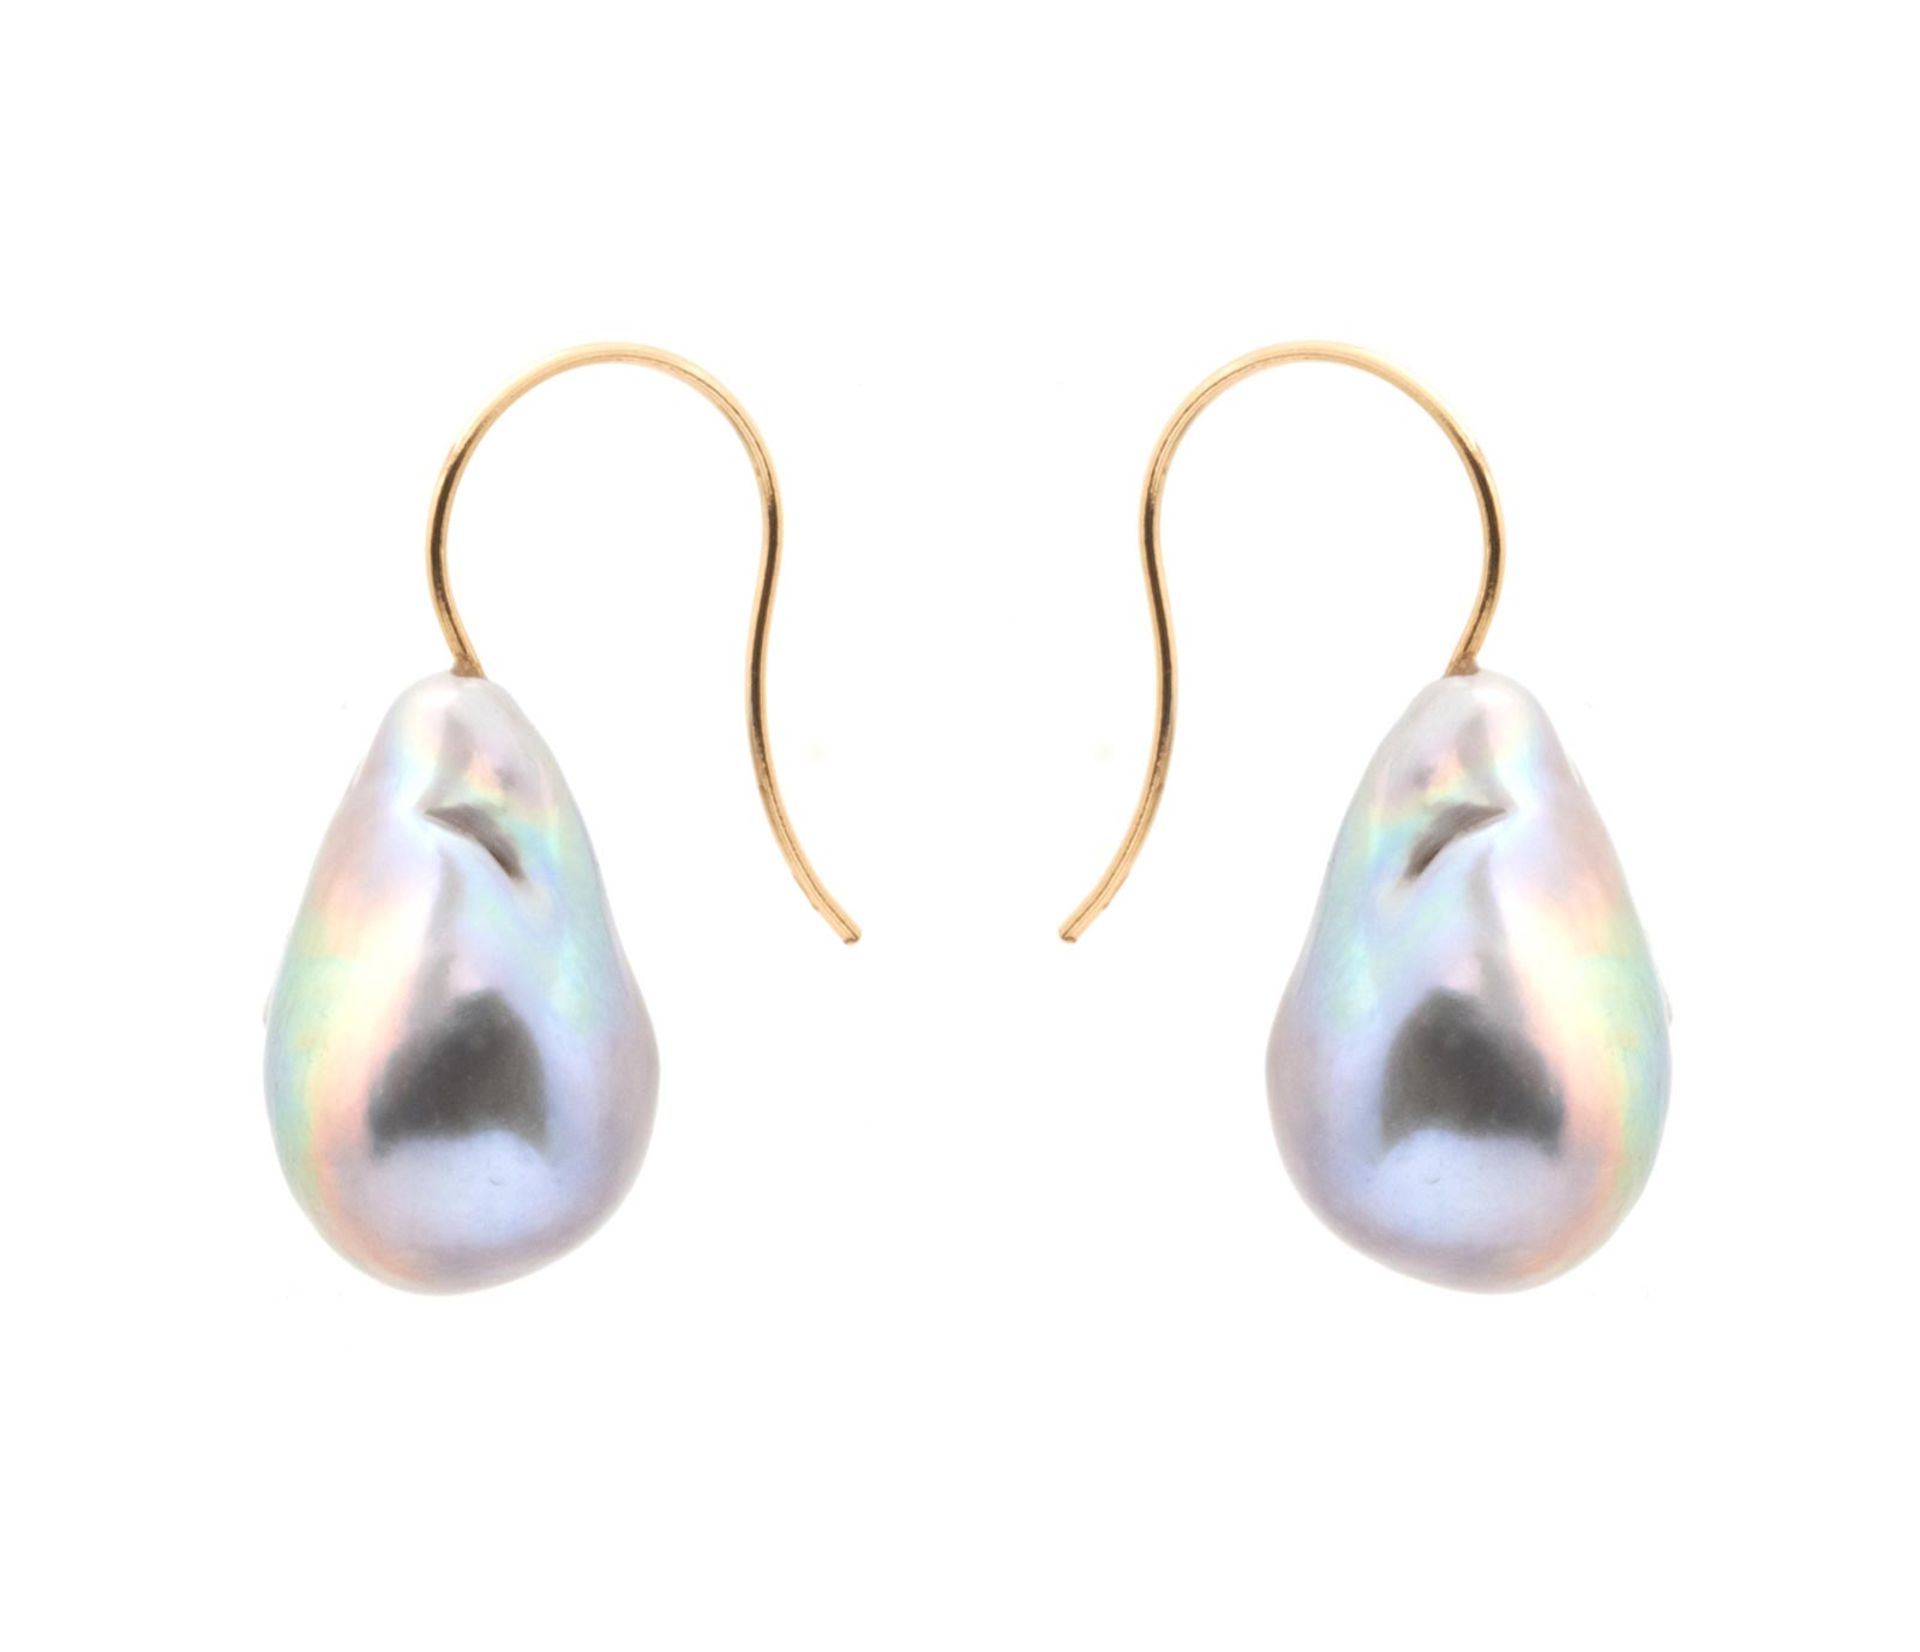 EARRINGS Montura en oro de 18 kl. con dos perlas barrocas cultivadas color gris natural con cierre d